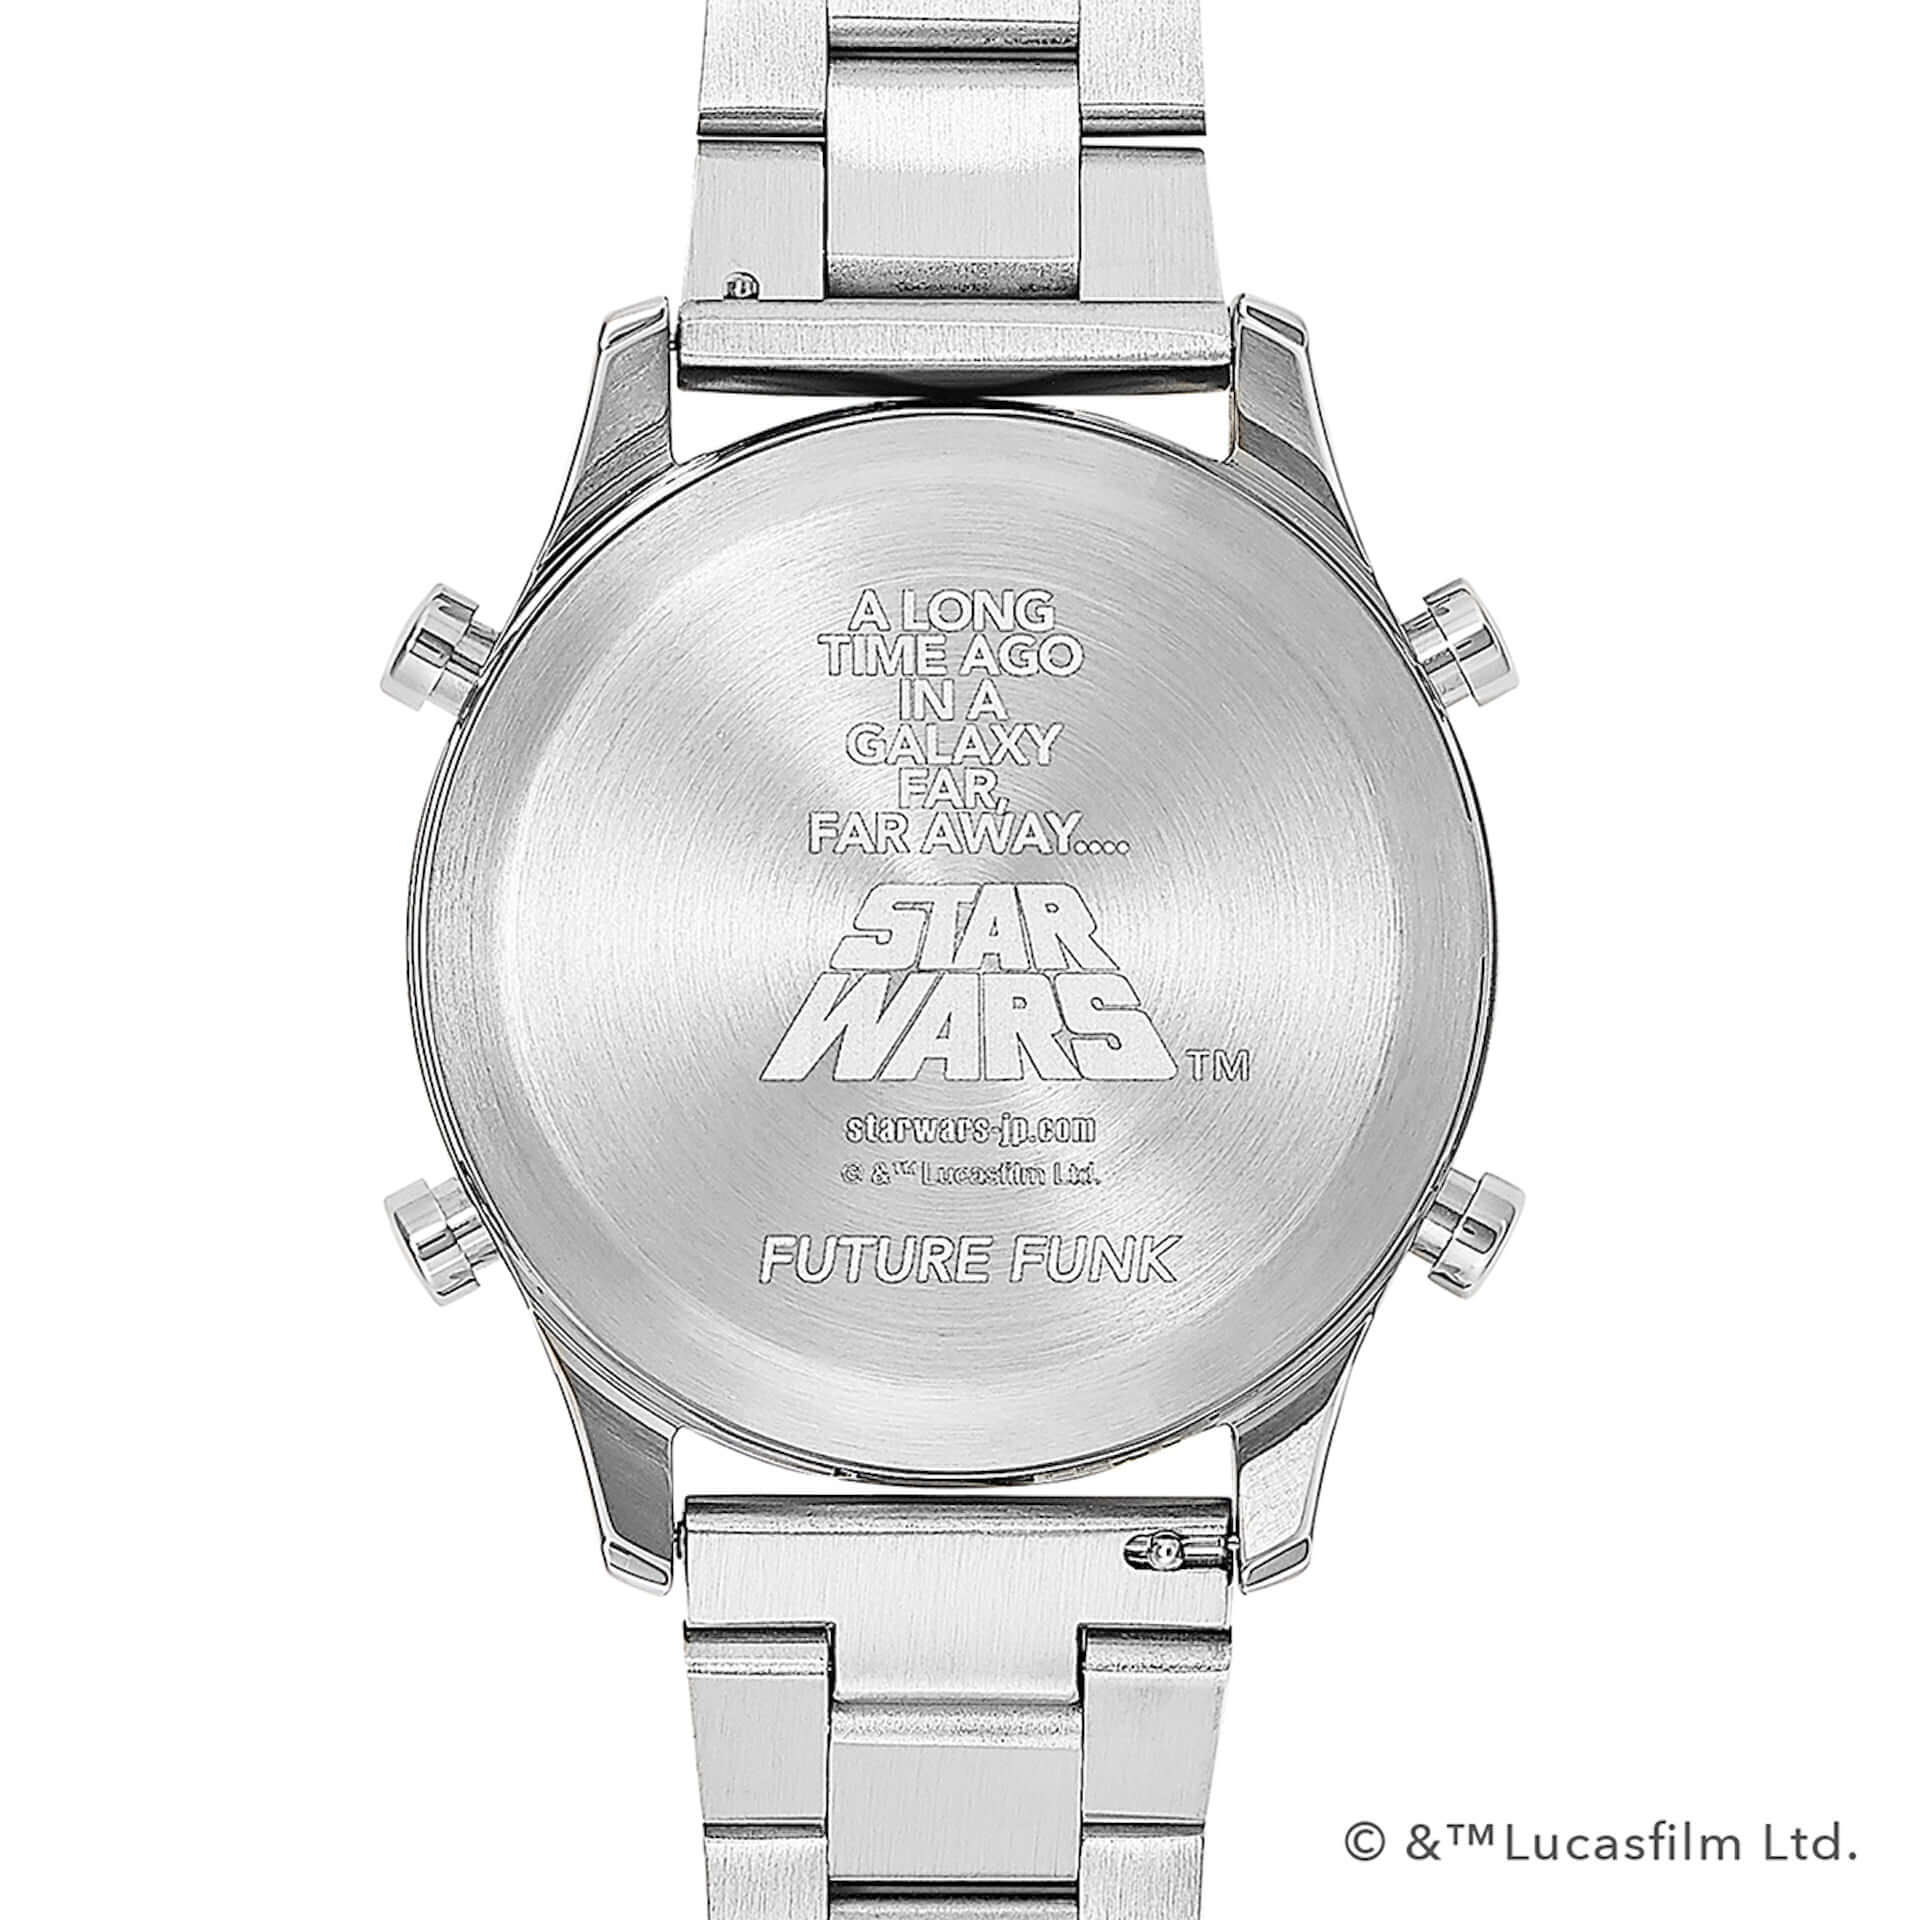 R2-D2＆C-3PO、ダース・ベイダーがローラー式腕時計に！『スター・ウォーズ』×「FUTURE FUNK」オリジナルデザインが登場 lifefashion191004_futurefunk_7-1920x1920